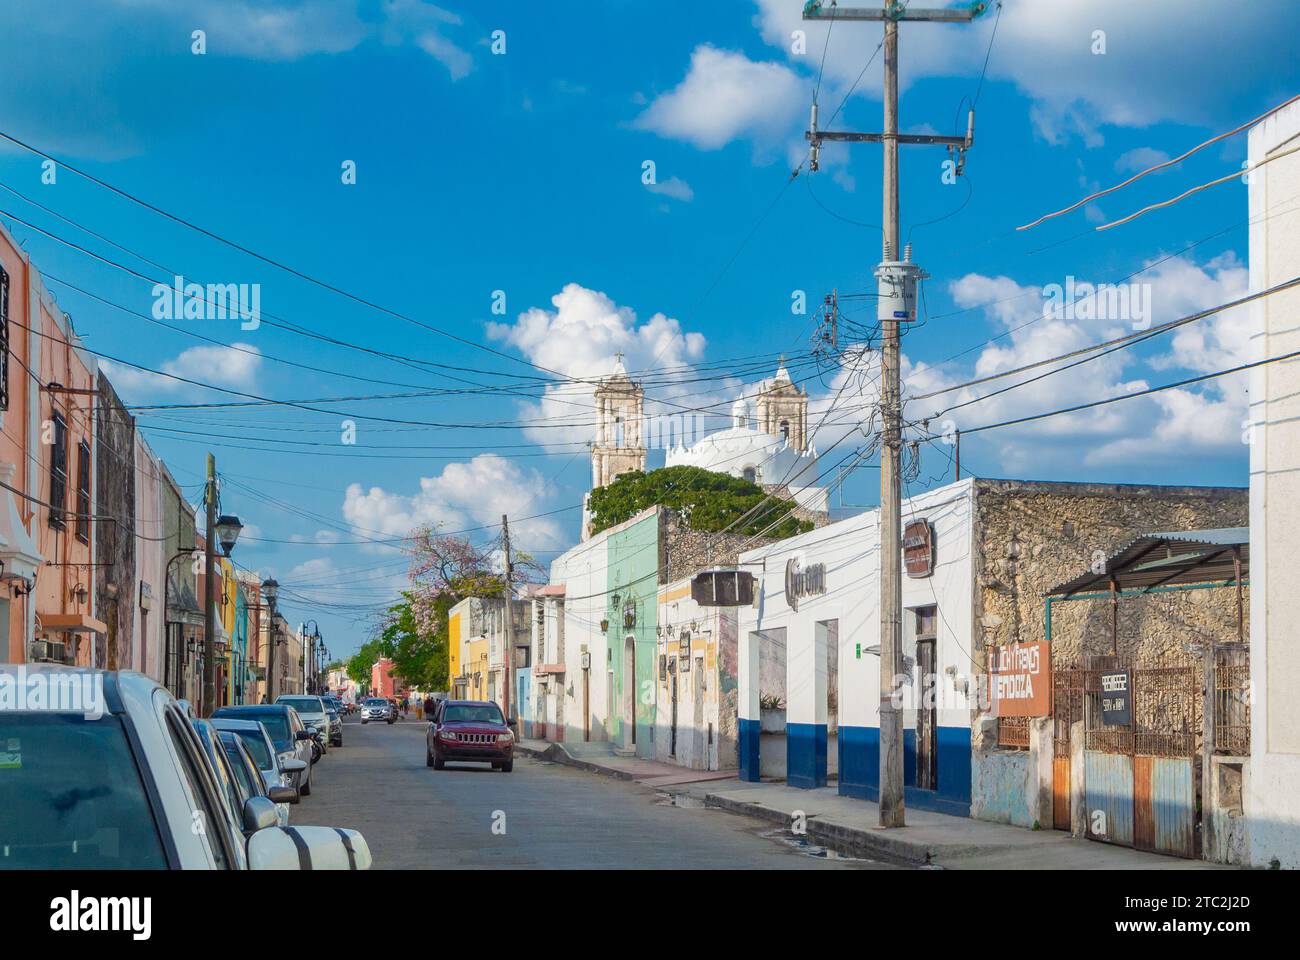 Valladolid, Yucatan, Mexiko, Stadtbild von Valladolid mit Häusern im Kolonialstil, nur Editorial. Stockfoto